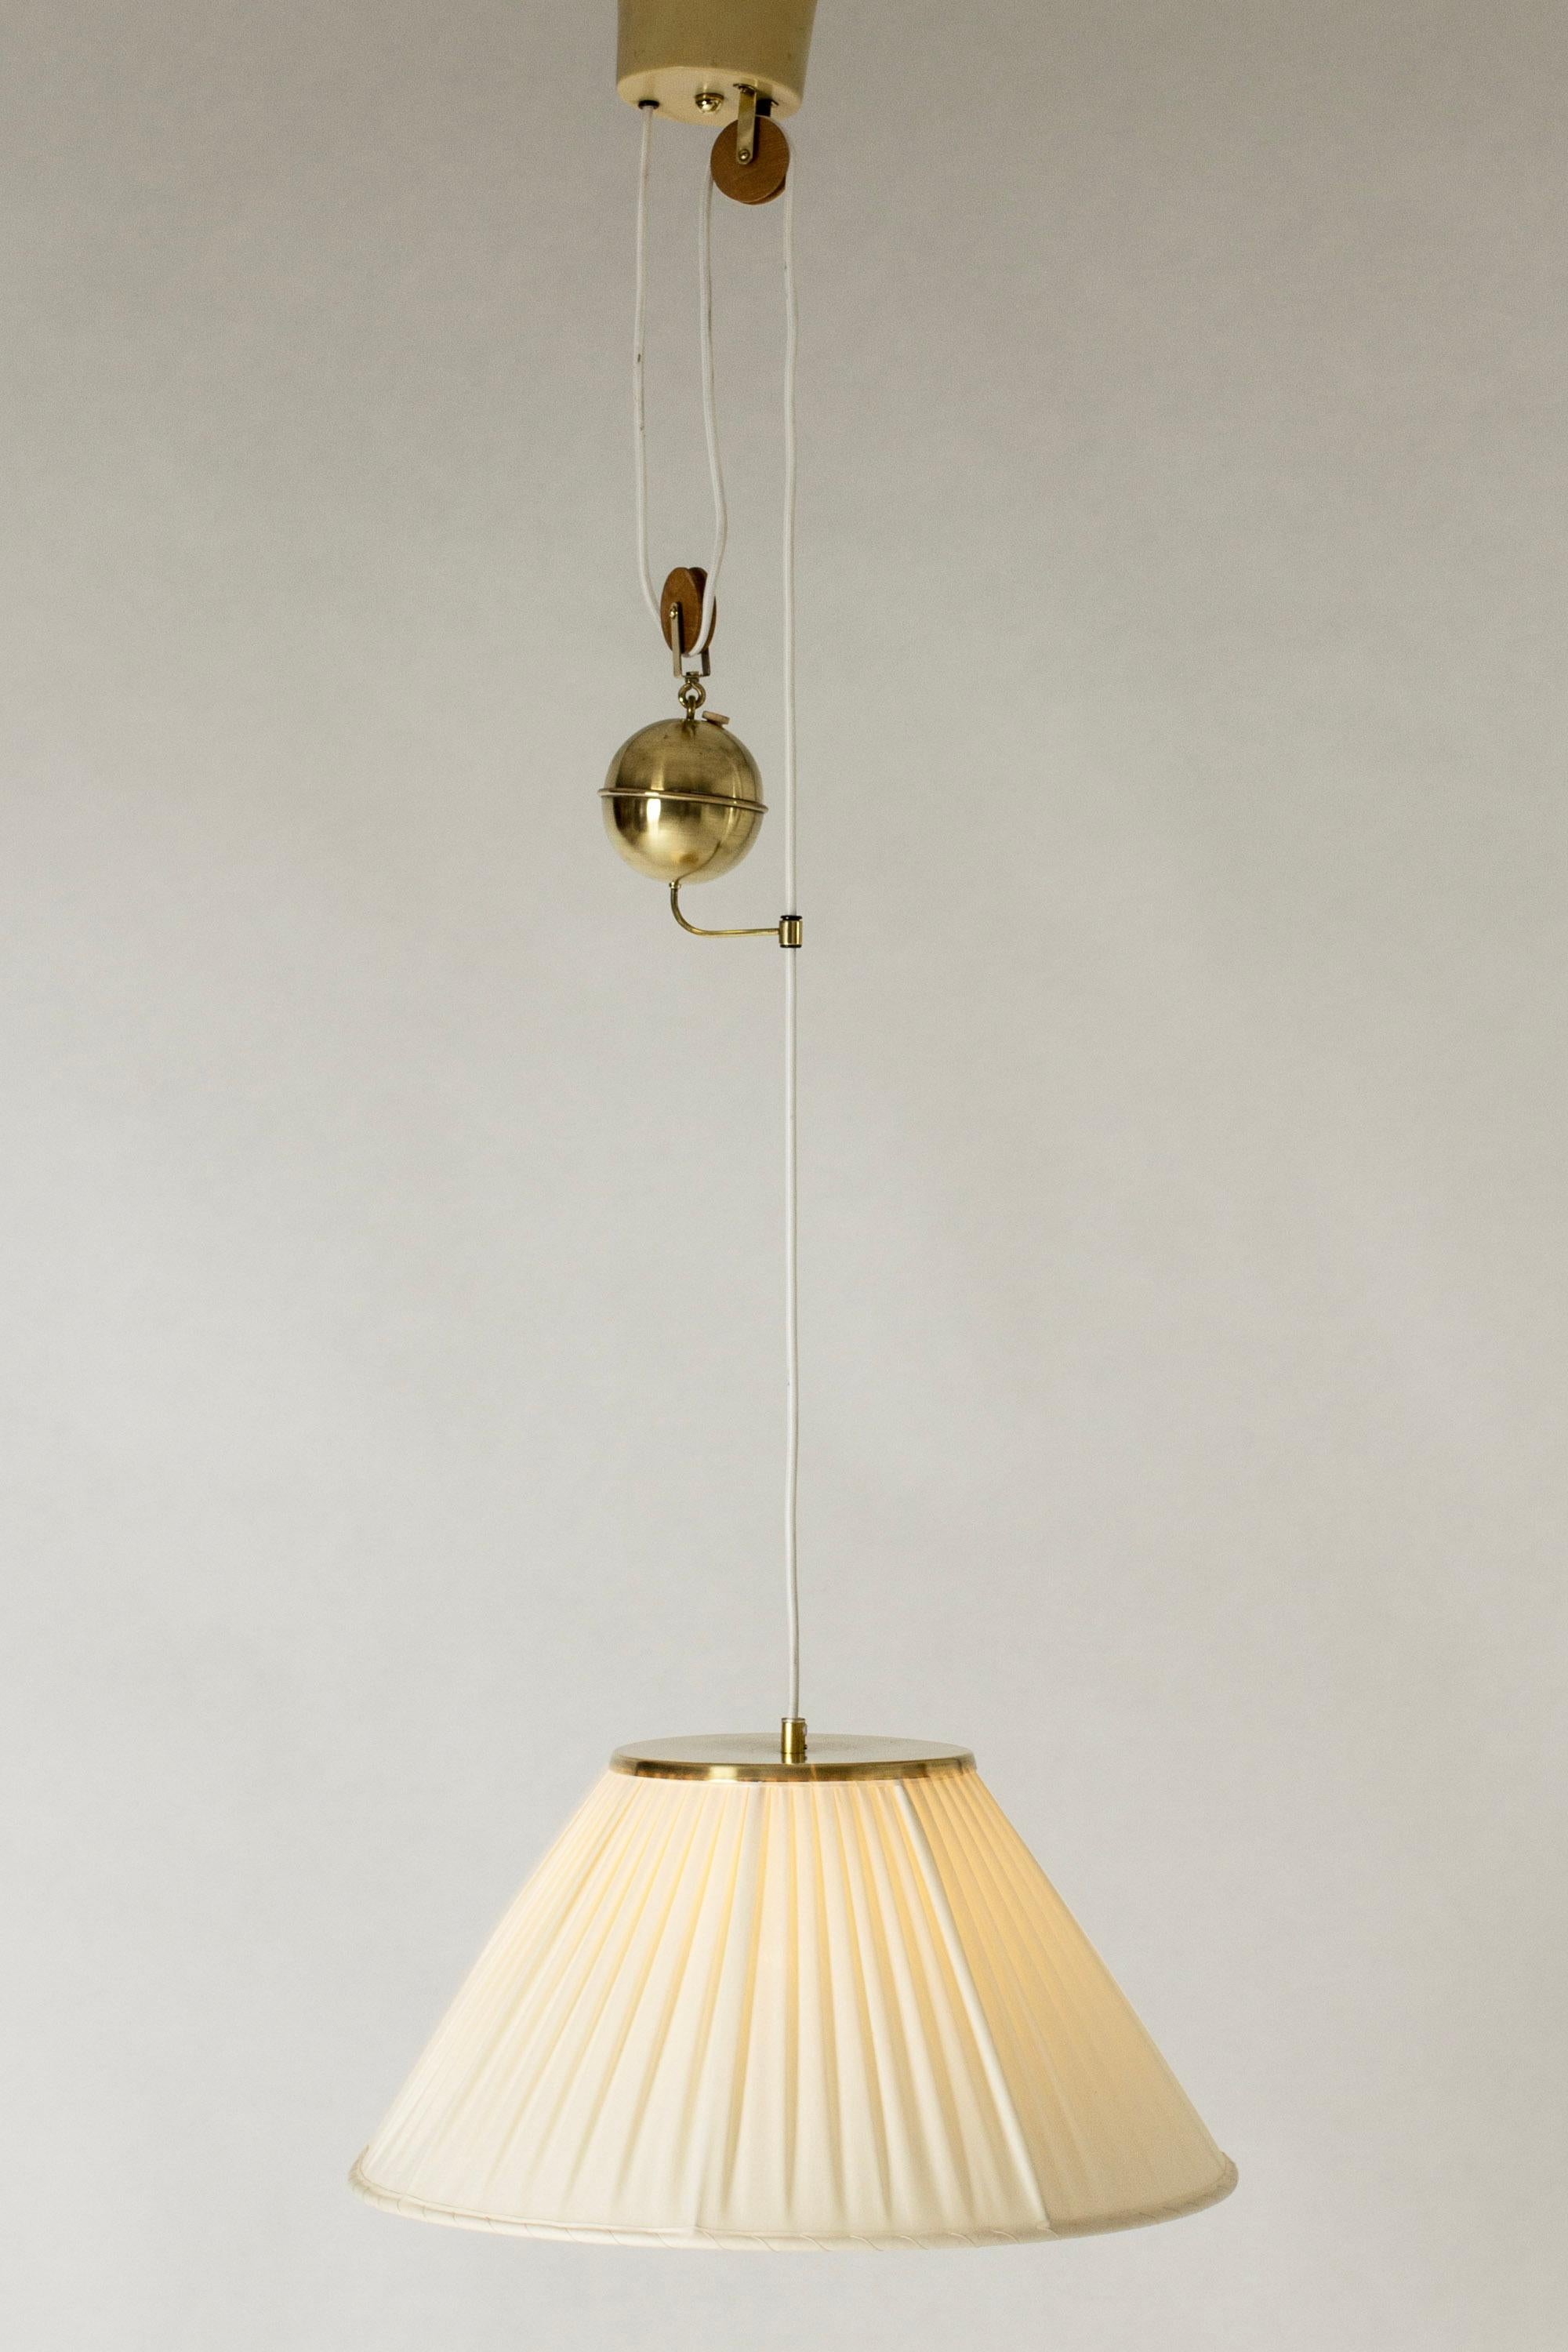 Brass Midcentury Modern Pendant Light by Josef Frank, Svenskt Tenn, Sweden, 1950s